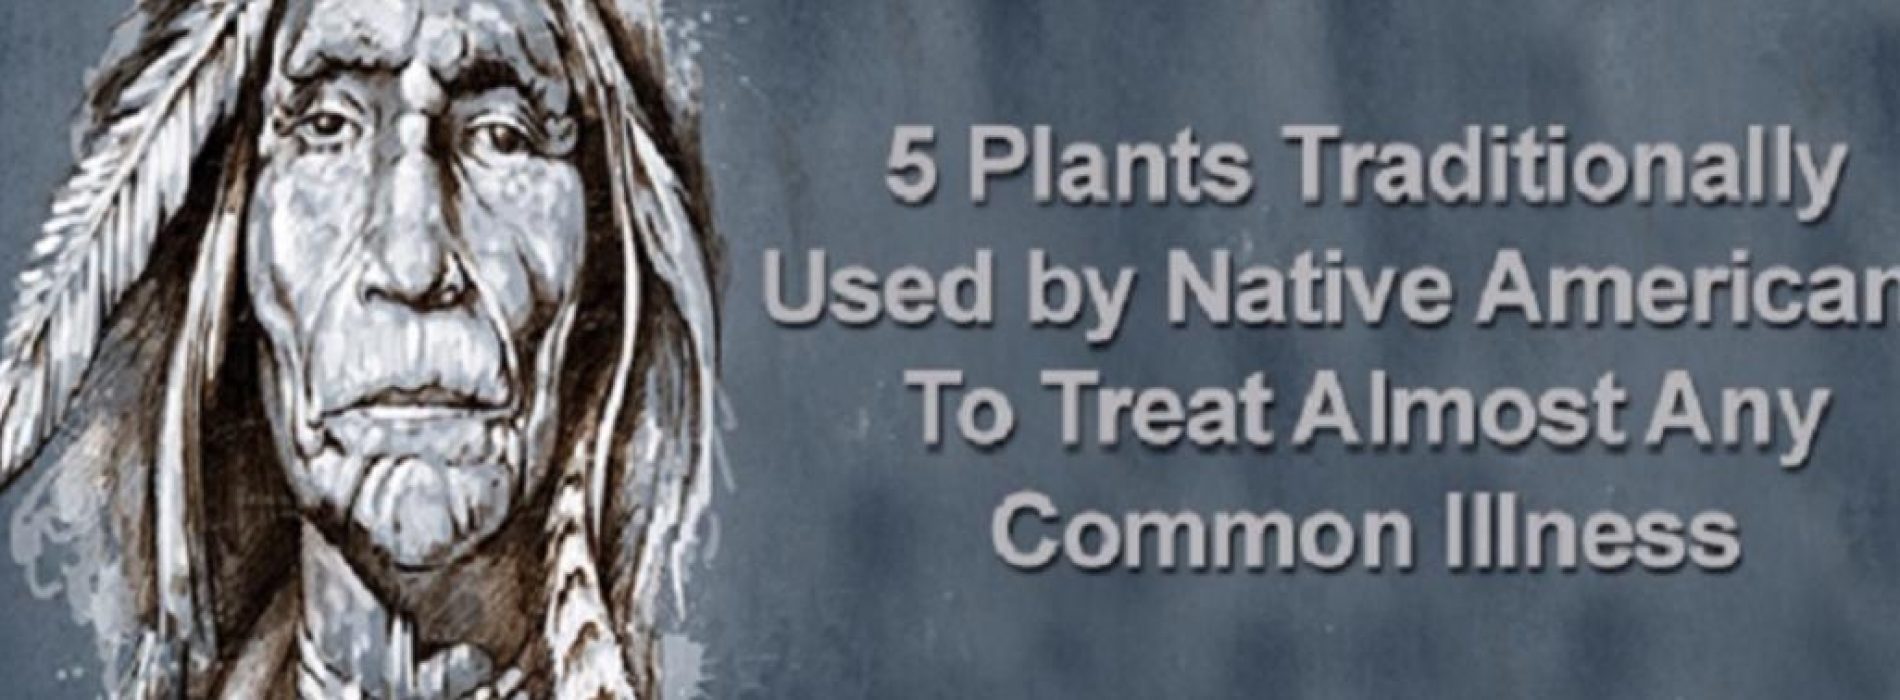 5 medicinale planten die sinds eeuwen door de indianen gebruikt werden